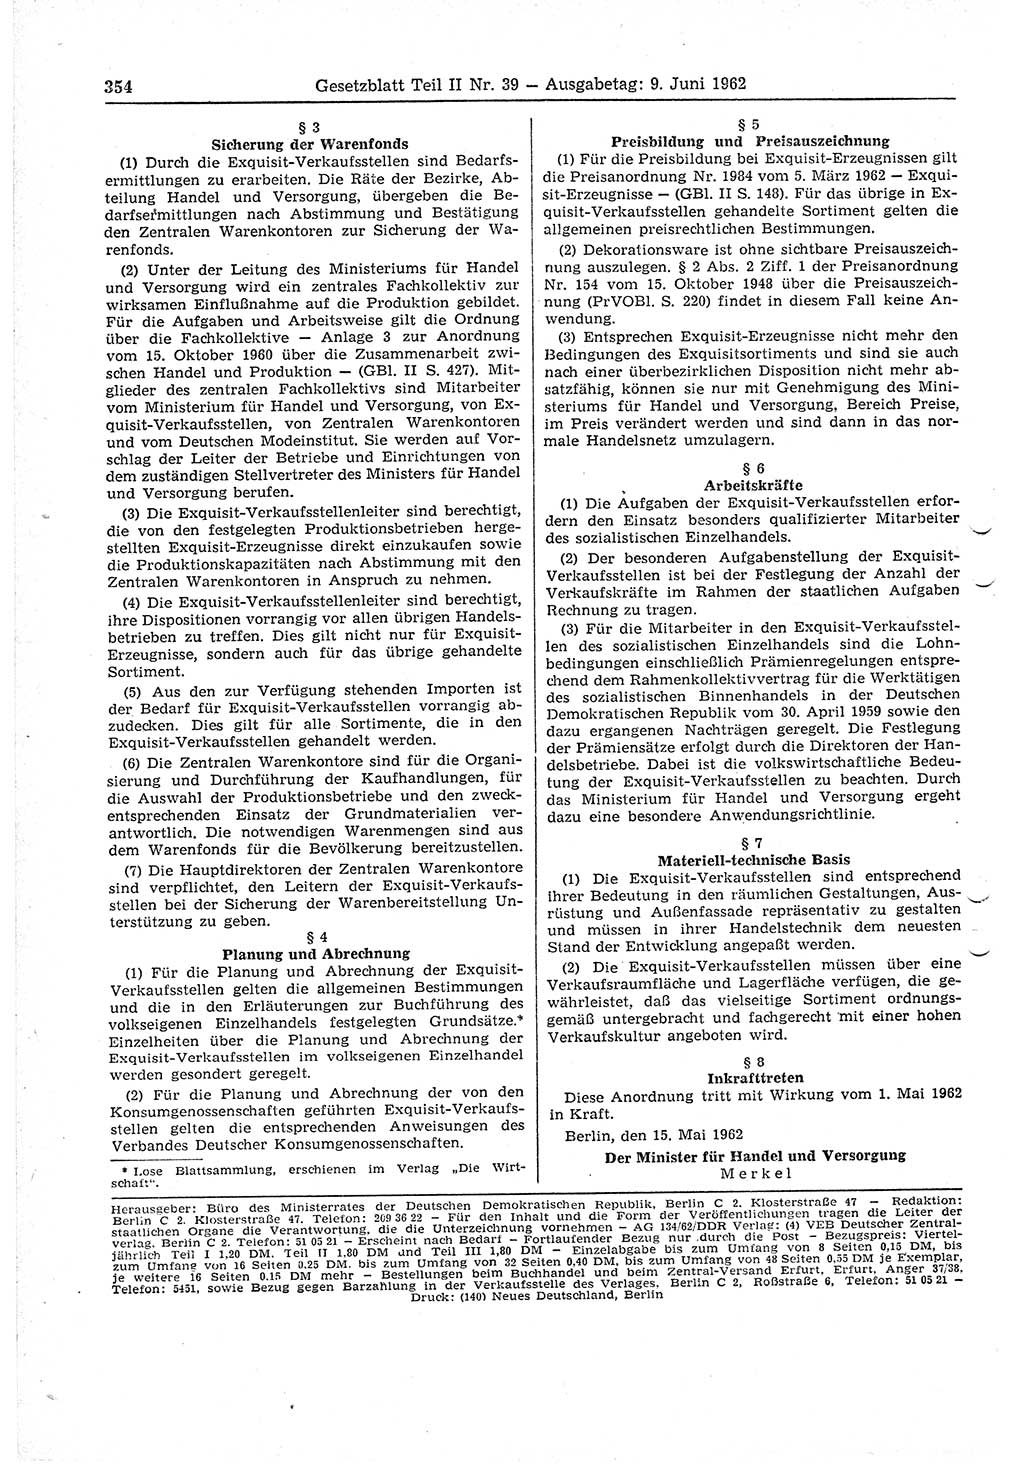 Gesetzblatt (GBl.) der Deutschen Demokratischen Republik (DDR) Teil ⅠⅠ 1962, Seite 354 (GBl. DDR ⅠⅠ 1962, S. 354)